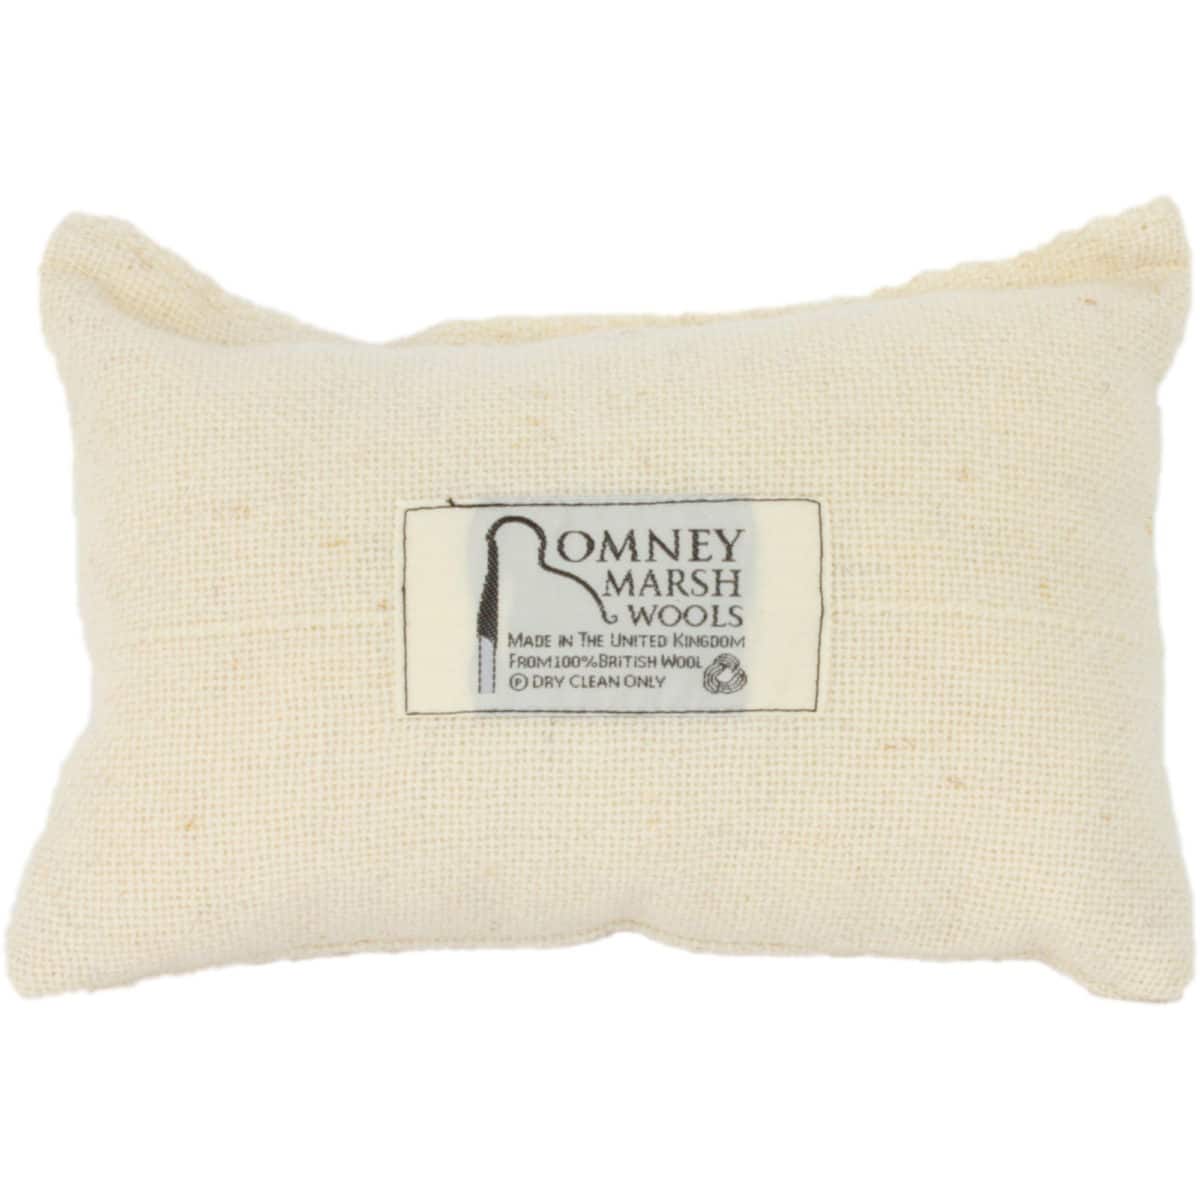 Romney Marsh Lavender Sack